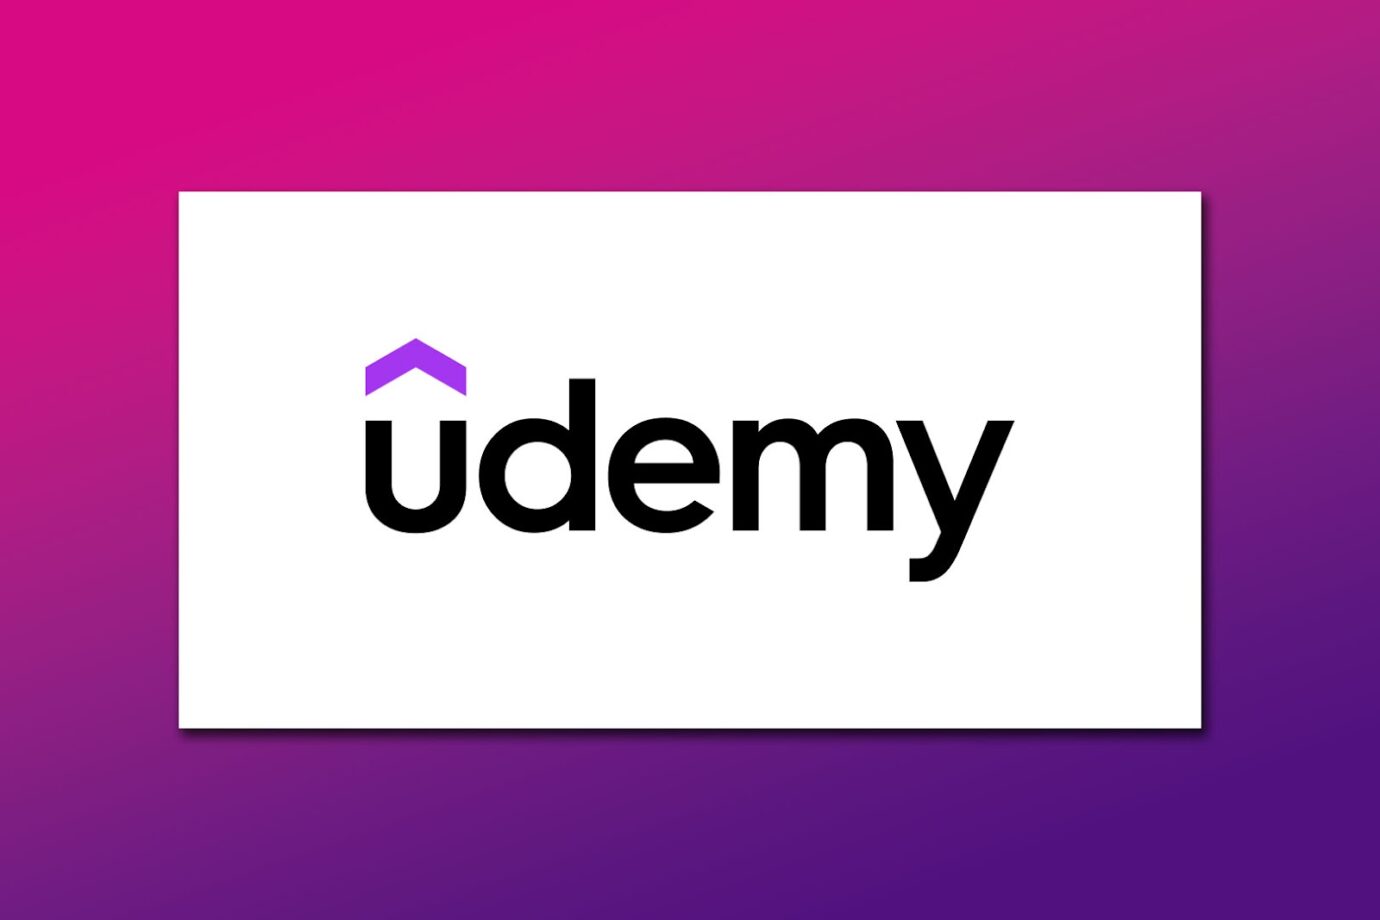 Udemy Company Using Slack